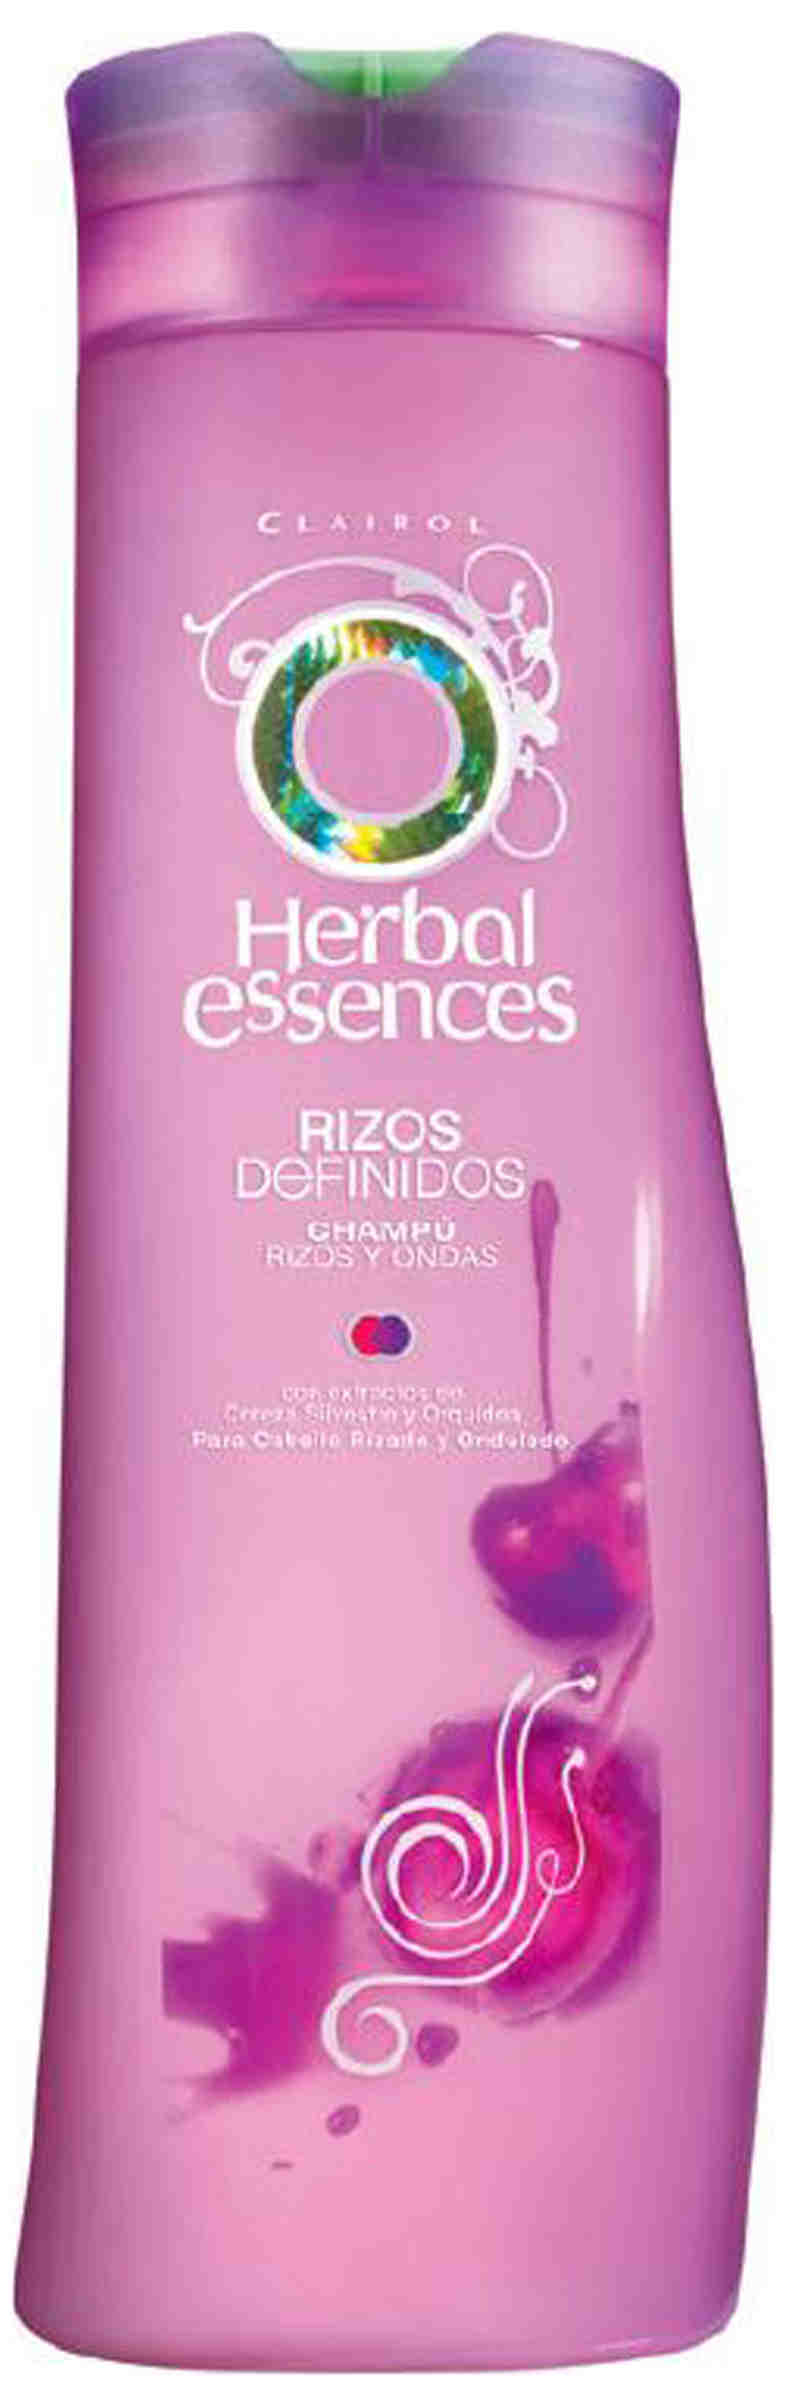 Foto Champú Rizos Definidos Herbal Essences